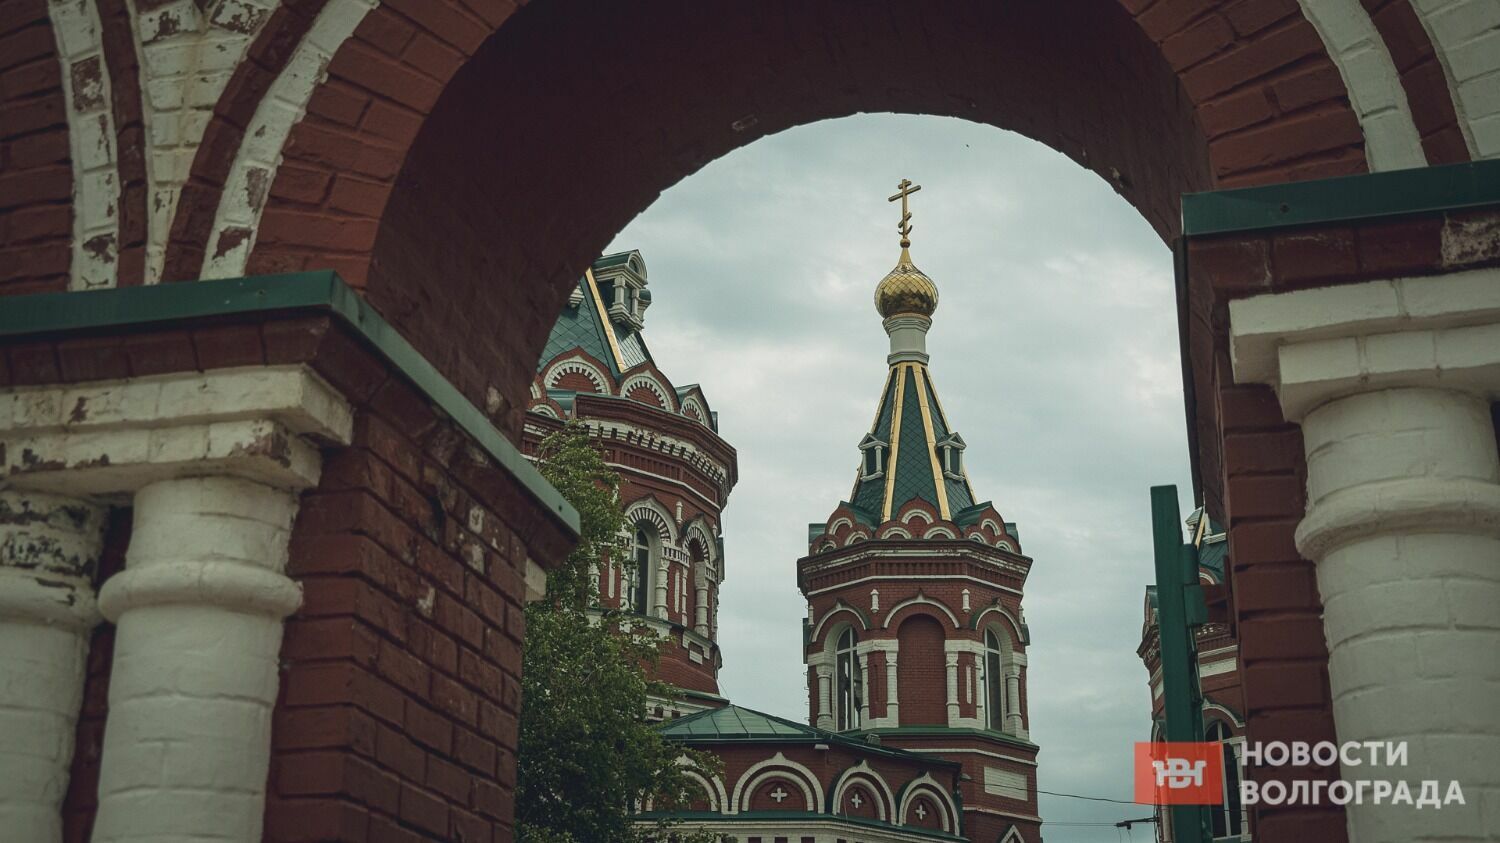 Храм Казанской иконы Божией Матери — некогда главный собор Волгограда, и по-прежнему один из красивейших православных храмов Волгограда.